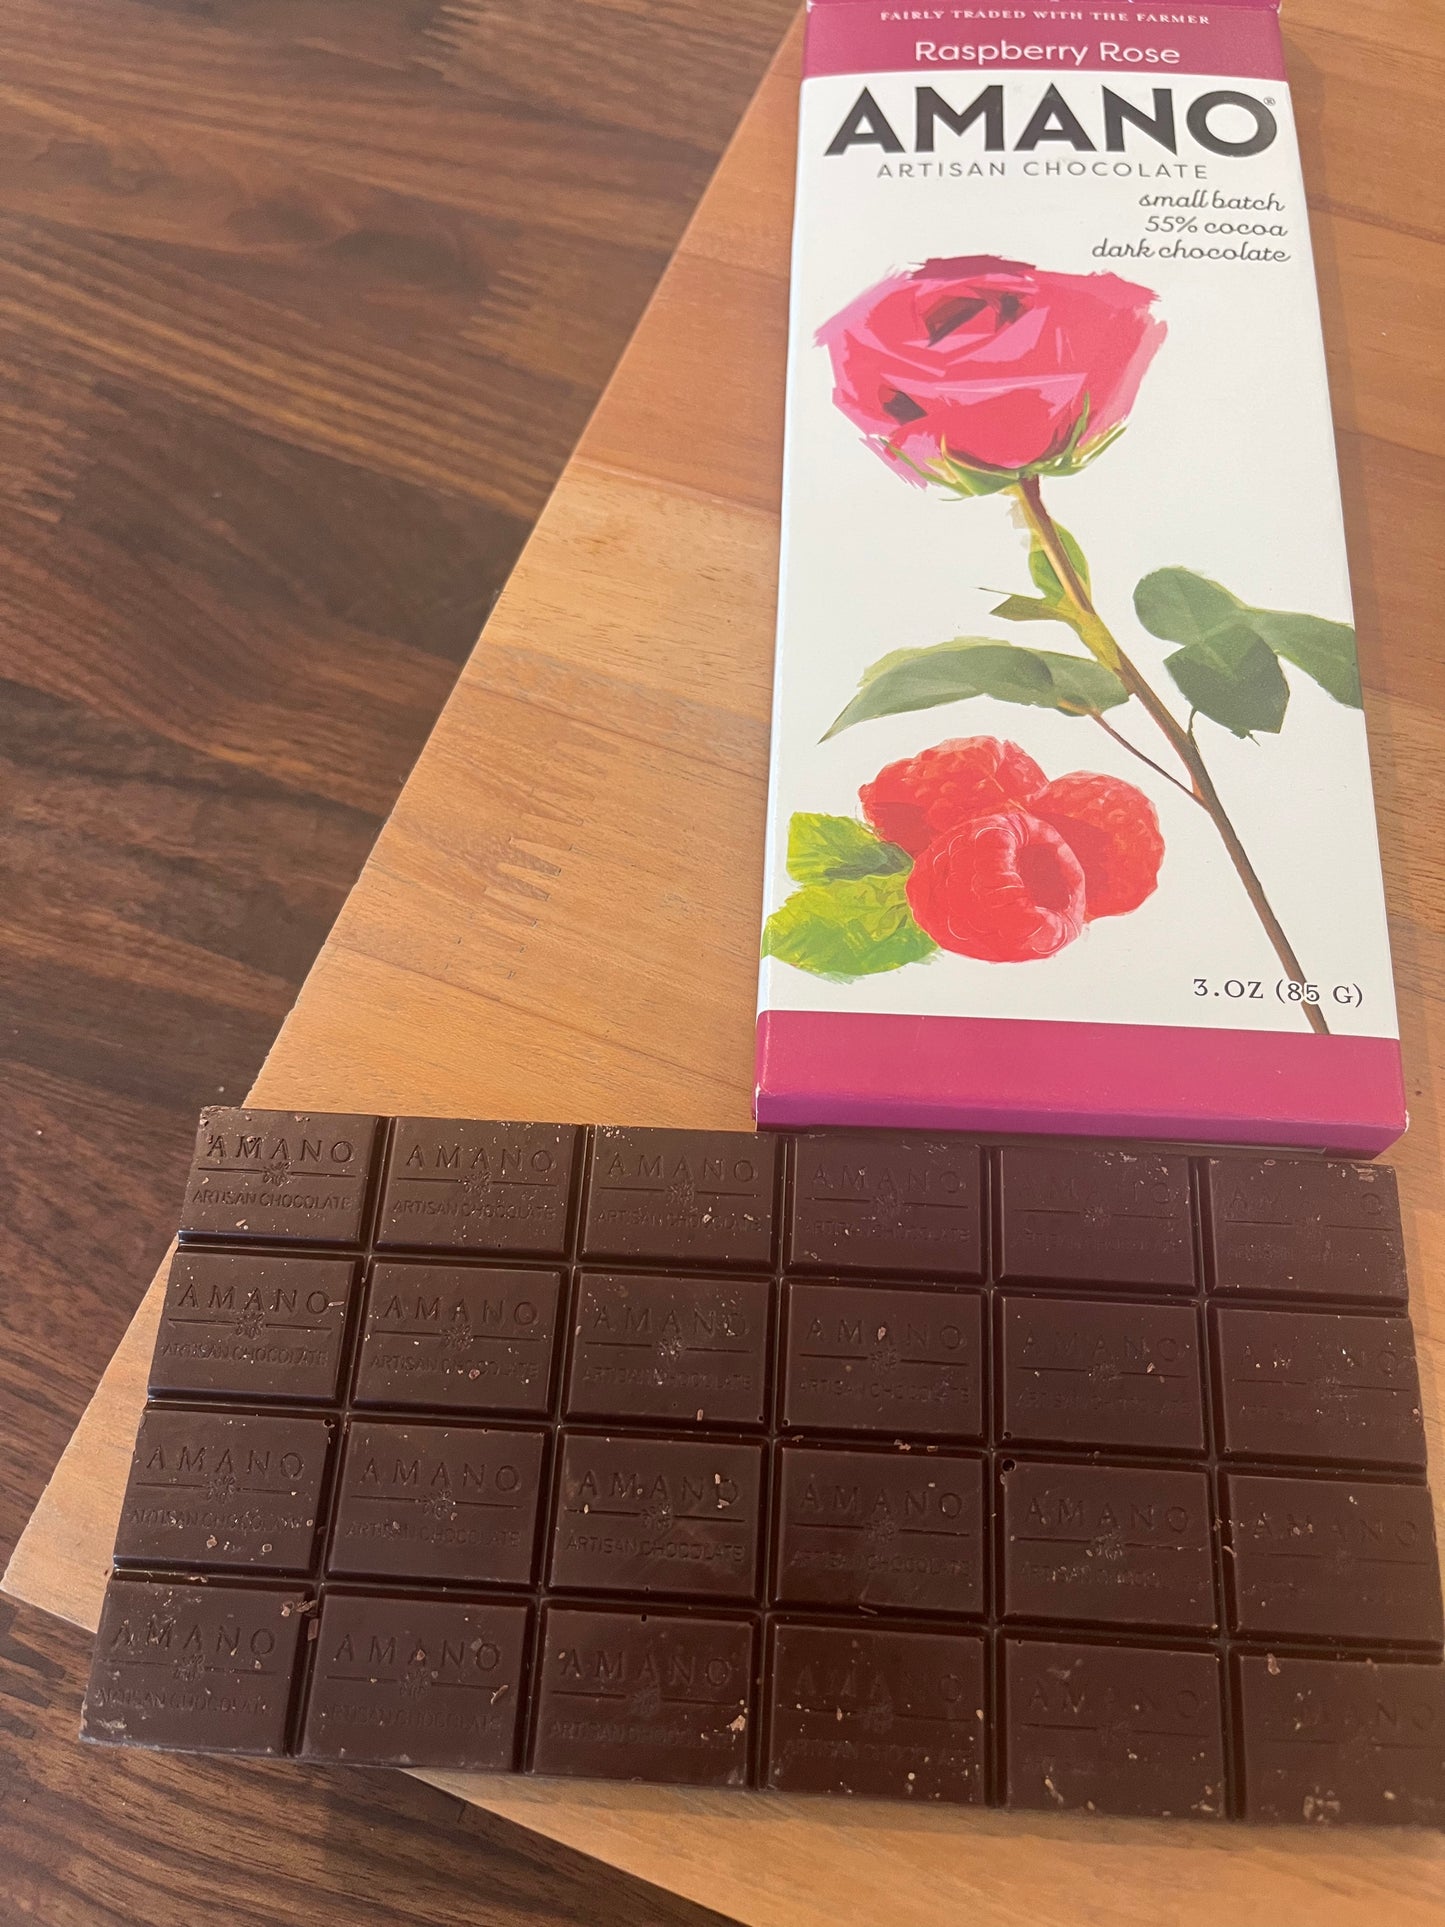 Amano Raspberry Rose 55% dark chocolate